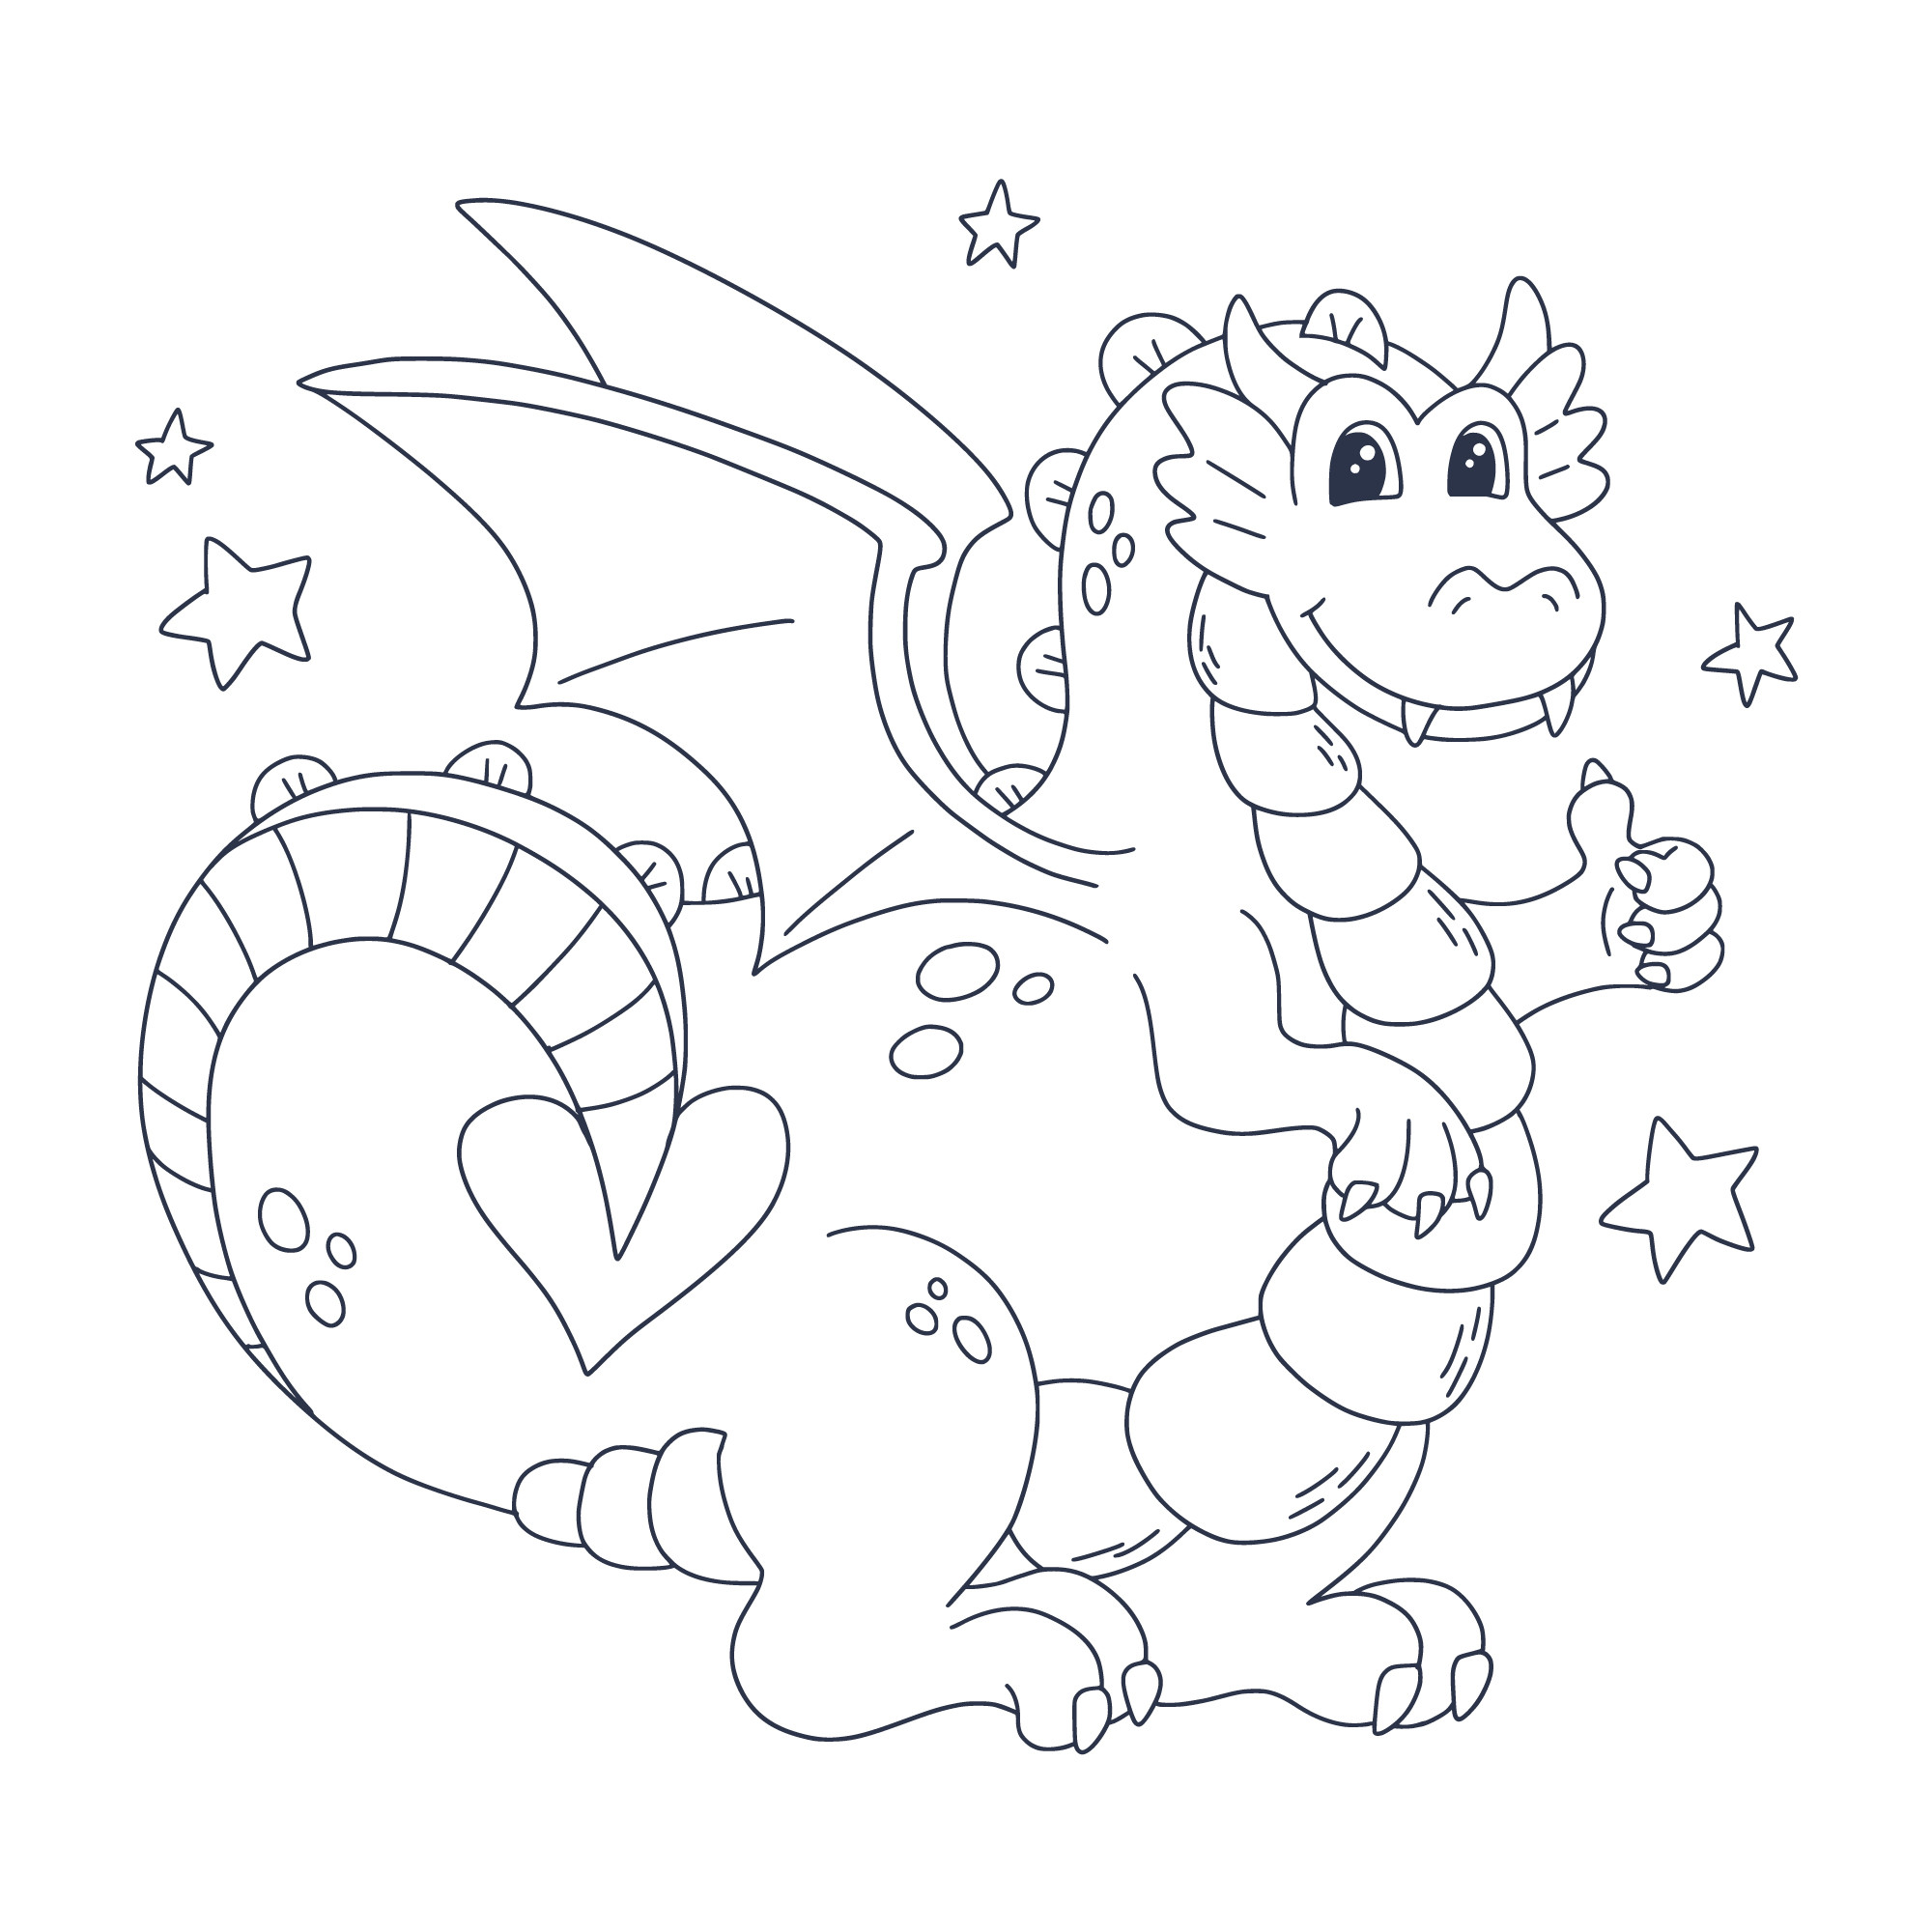 Раскраска для детей: веселый дракон с со звездочками